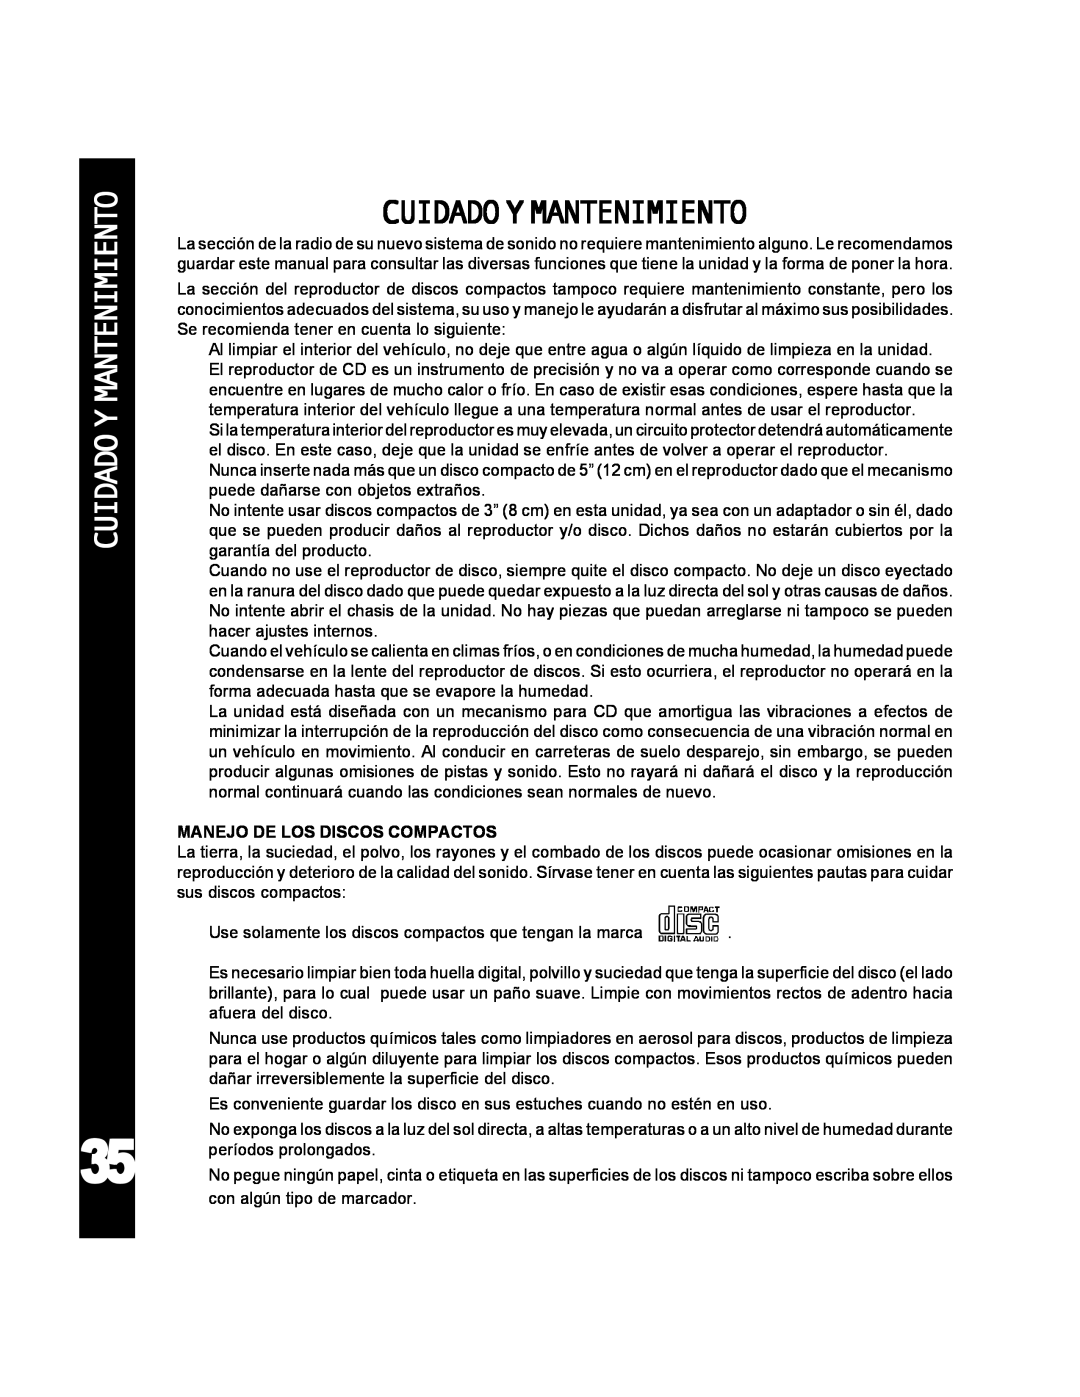 Audiovox ACD-25 manual Cuidado Y Mantenimiento, Cuidadoymantenimiento 